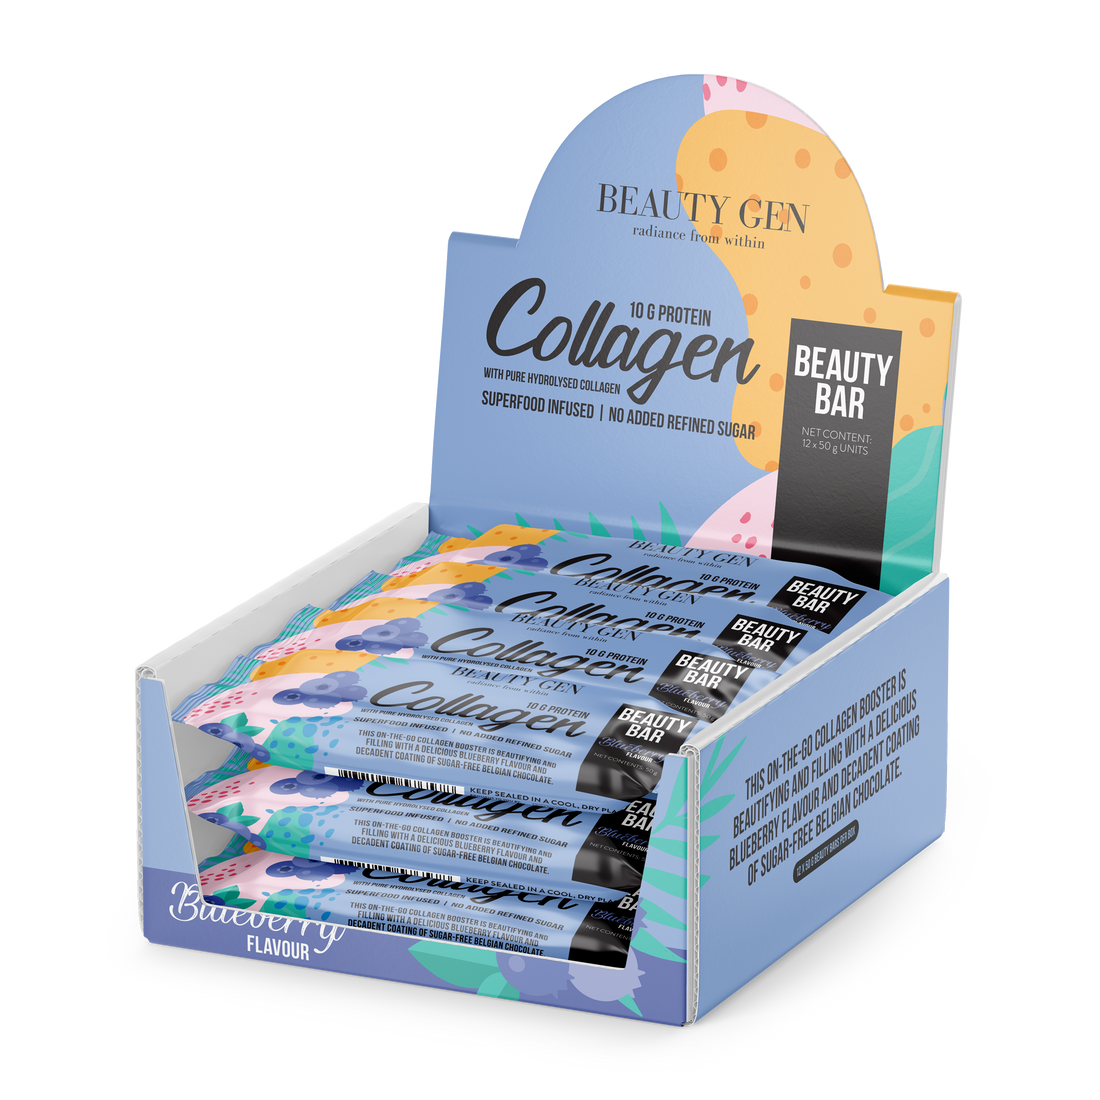 Beauty Gen Beauty Collagen Bar Blueberry Box